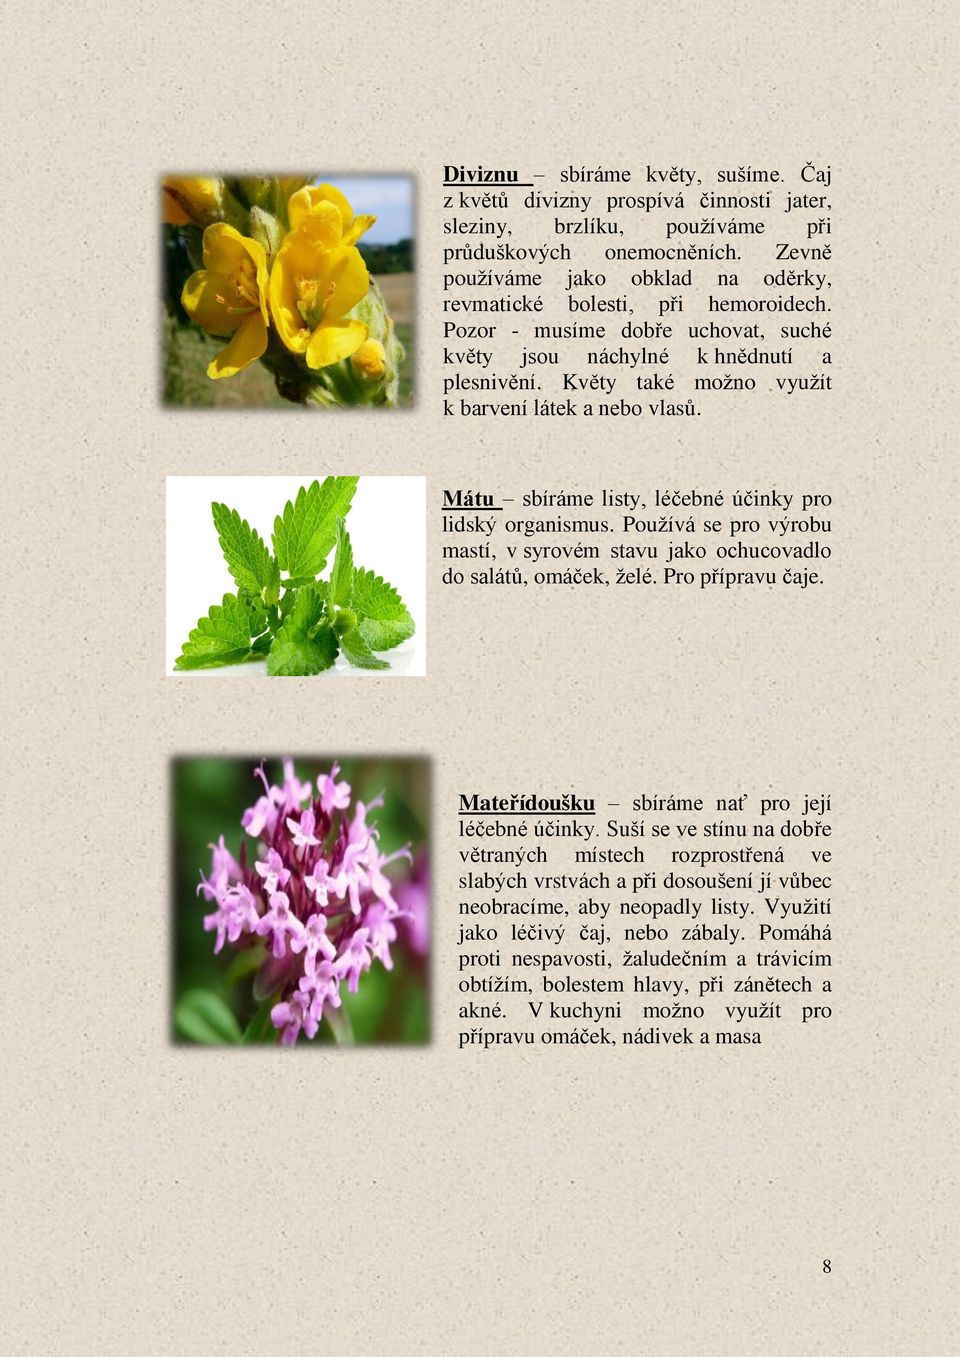 Květy také možno využít k barvení látek a nebo vlasů. Mátu sbíráme listy, léčebné účinky pro lidský organismus. Používá se pro výrobu mastí, v syrovém stavu jako ochucovadlo do salátů, omáček, želé.